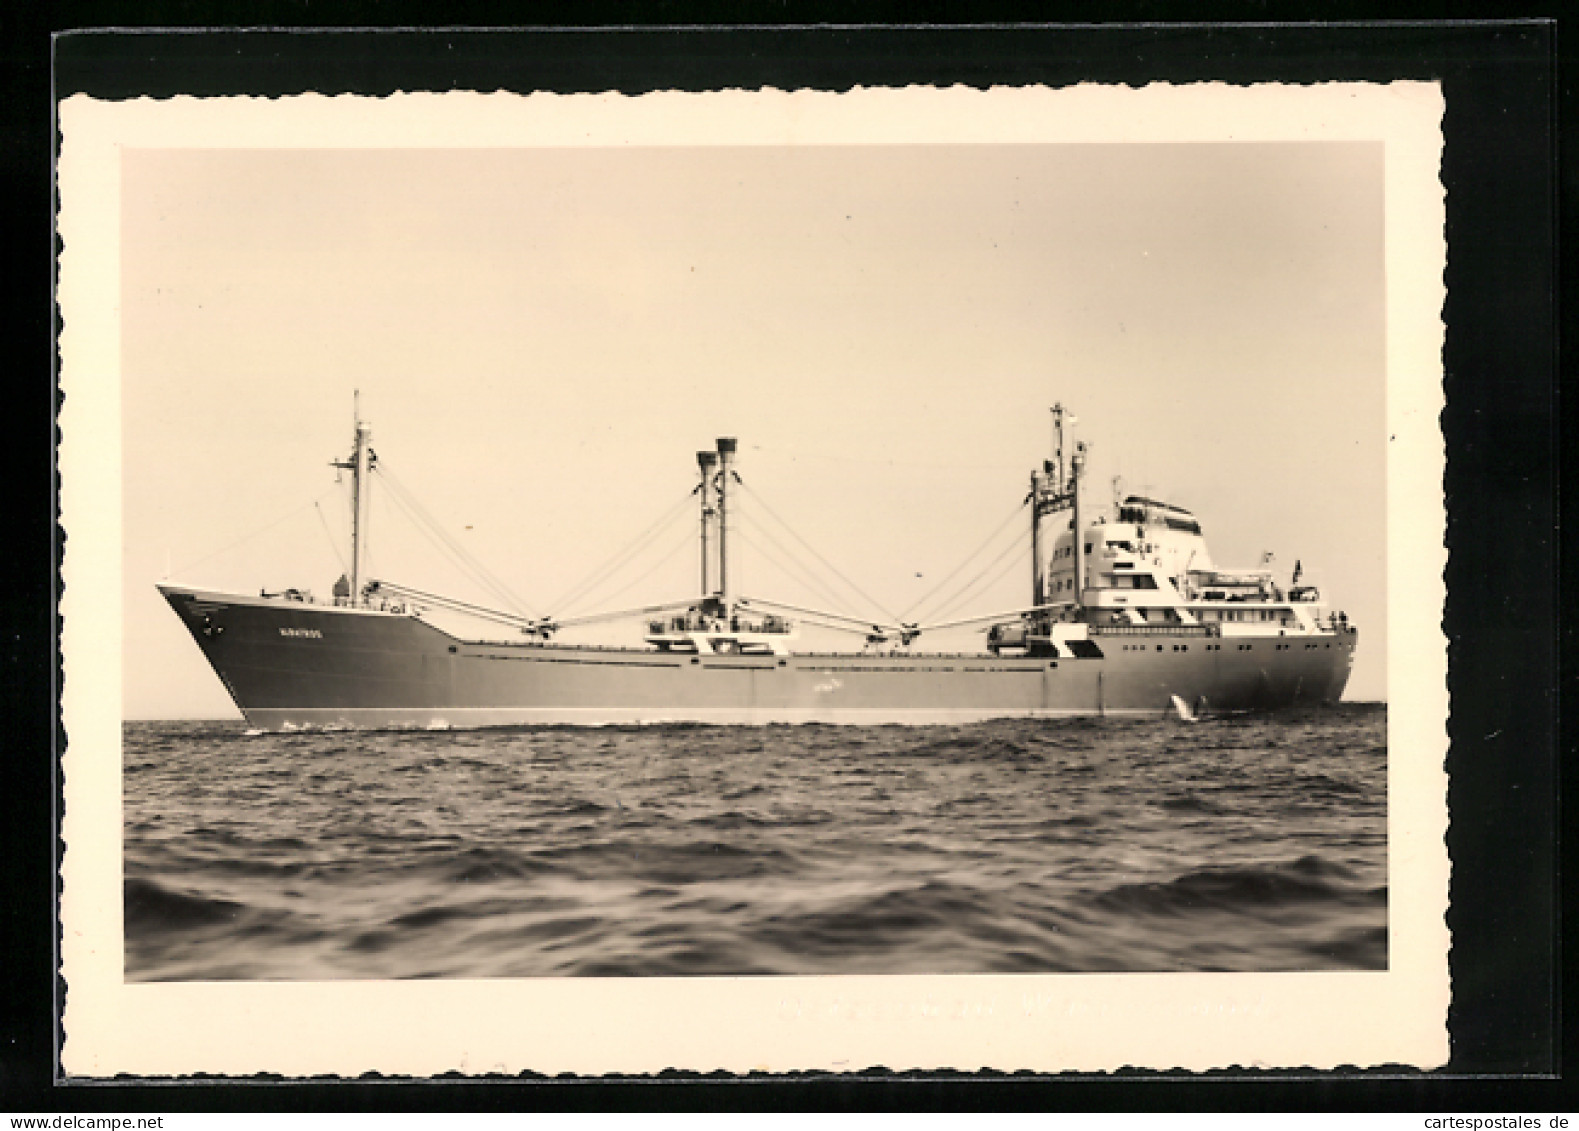 AK Frachtmotorschiff MS Albatros  - Commerce